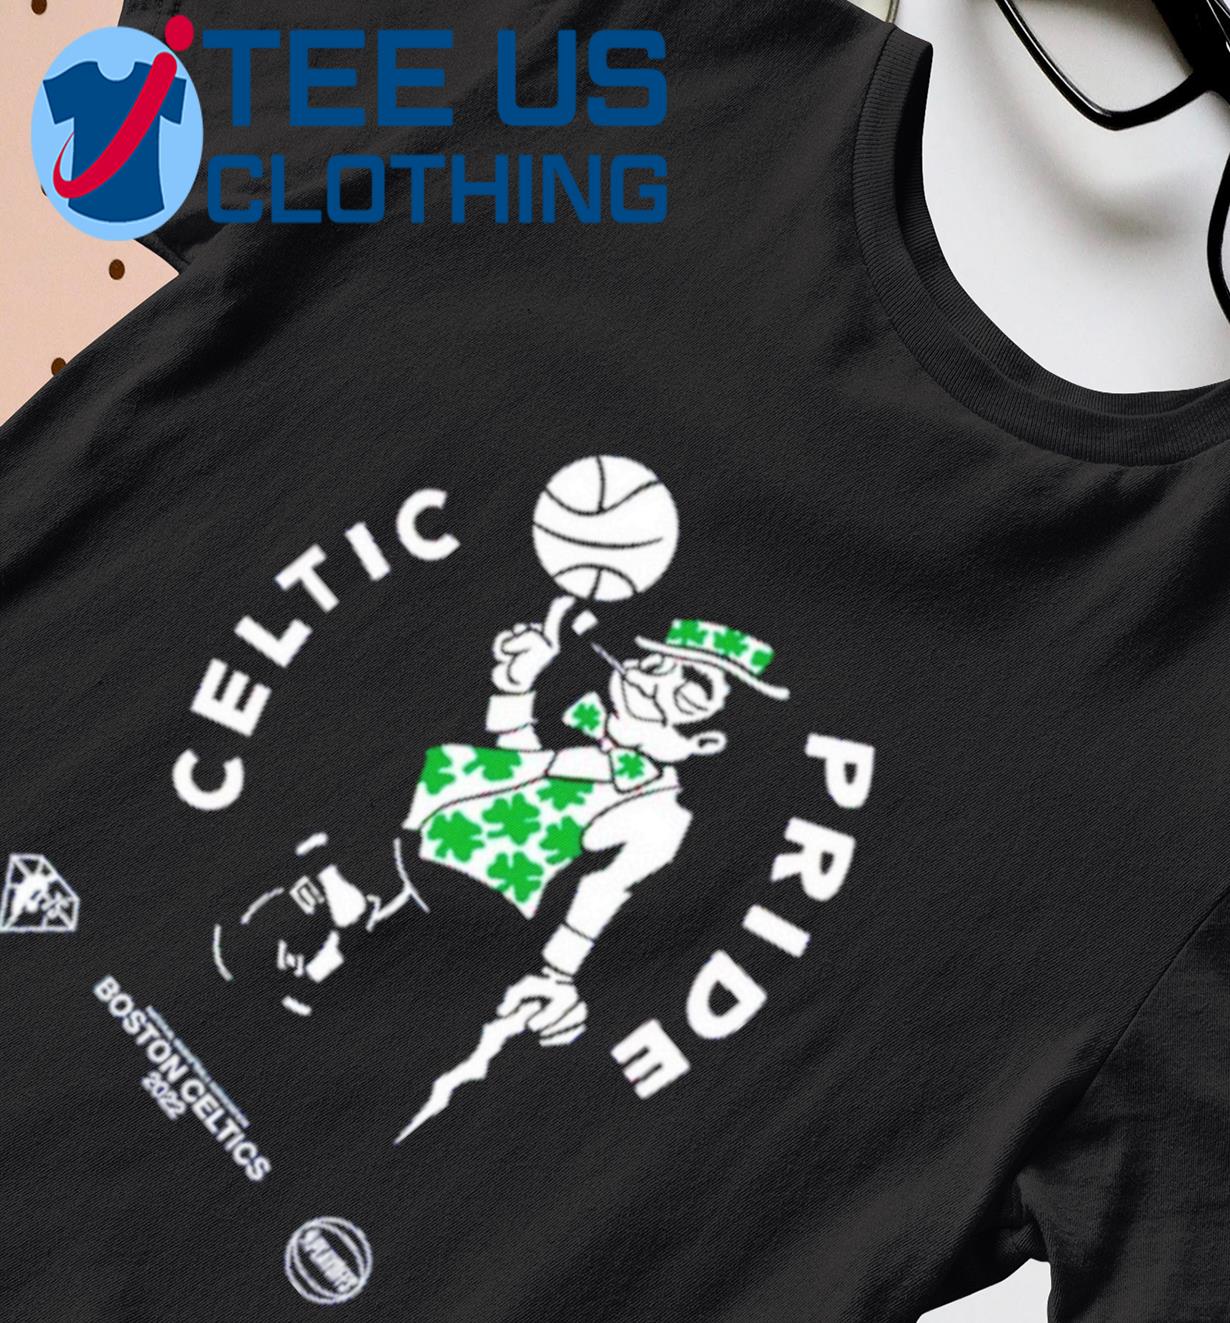 Celtics Gray Celtics Pride Tee